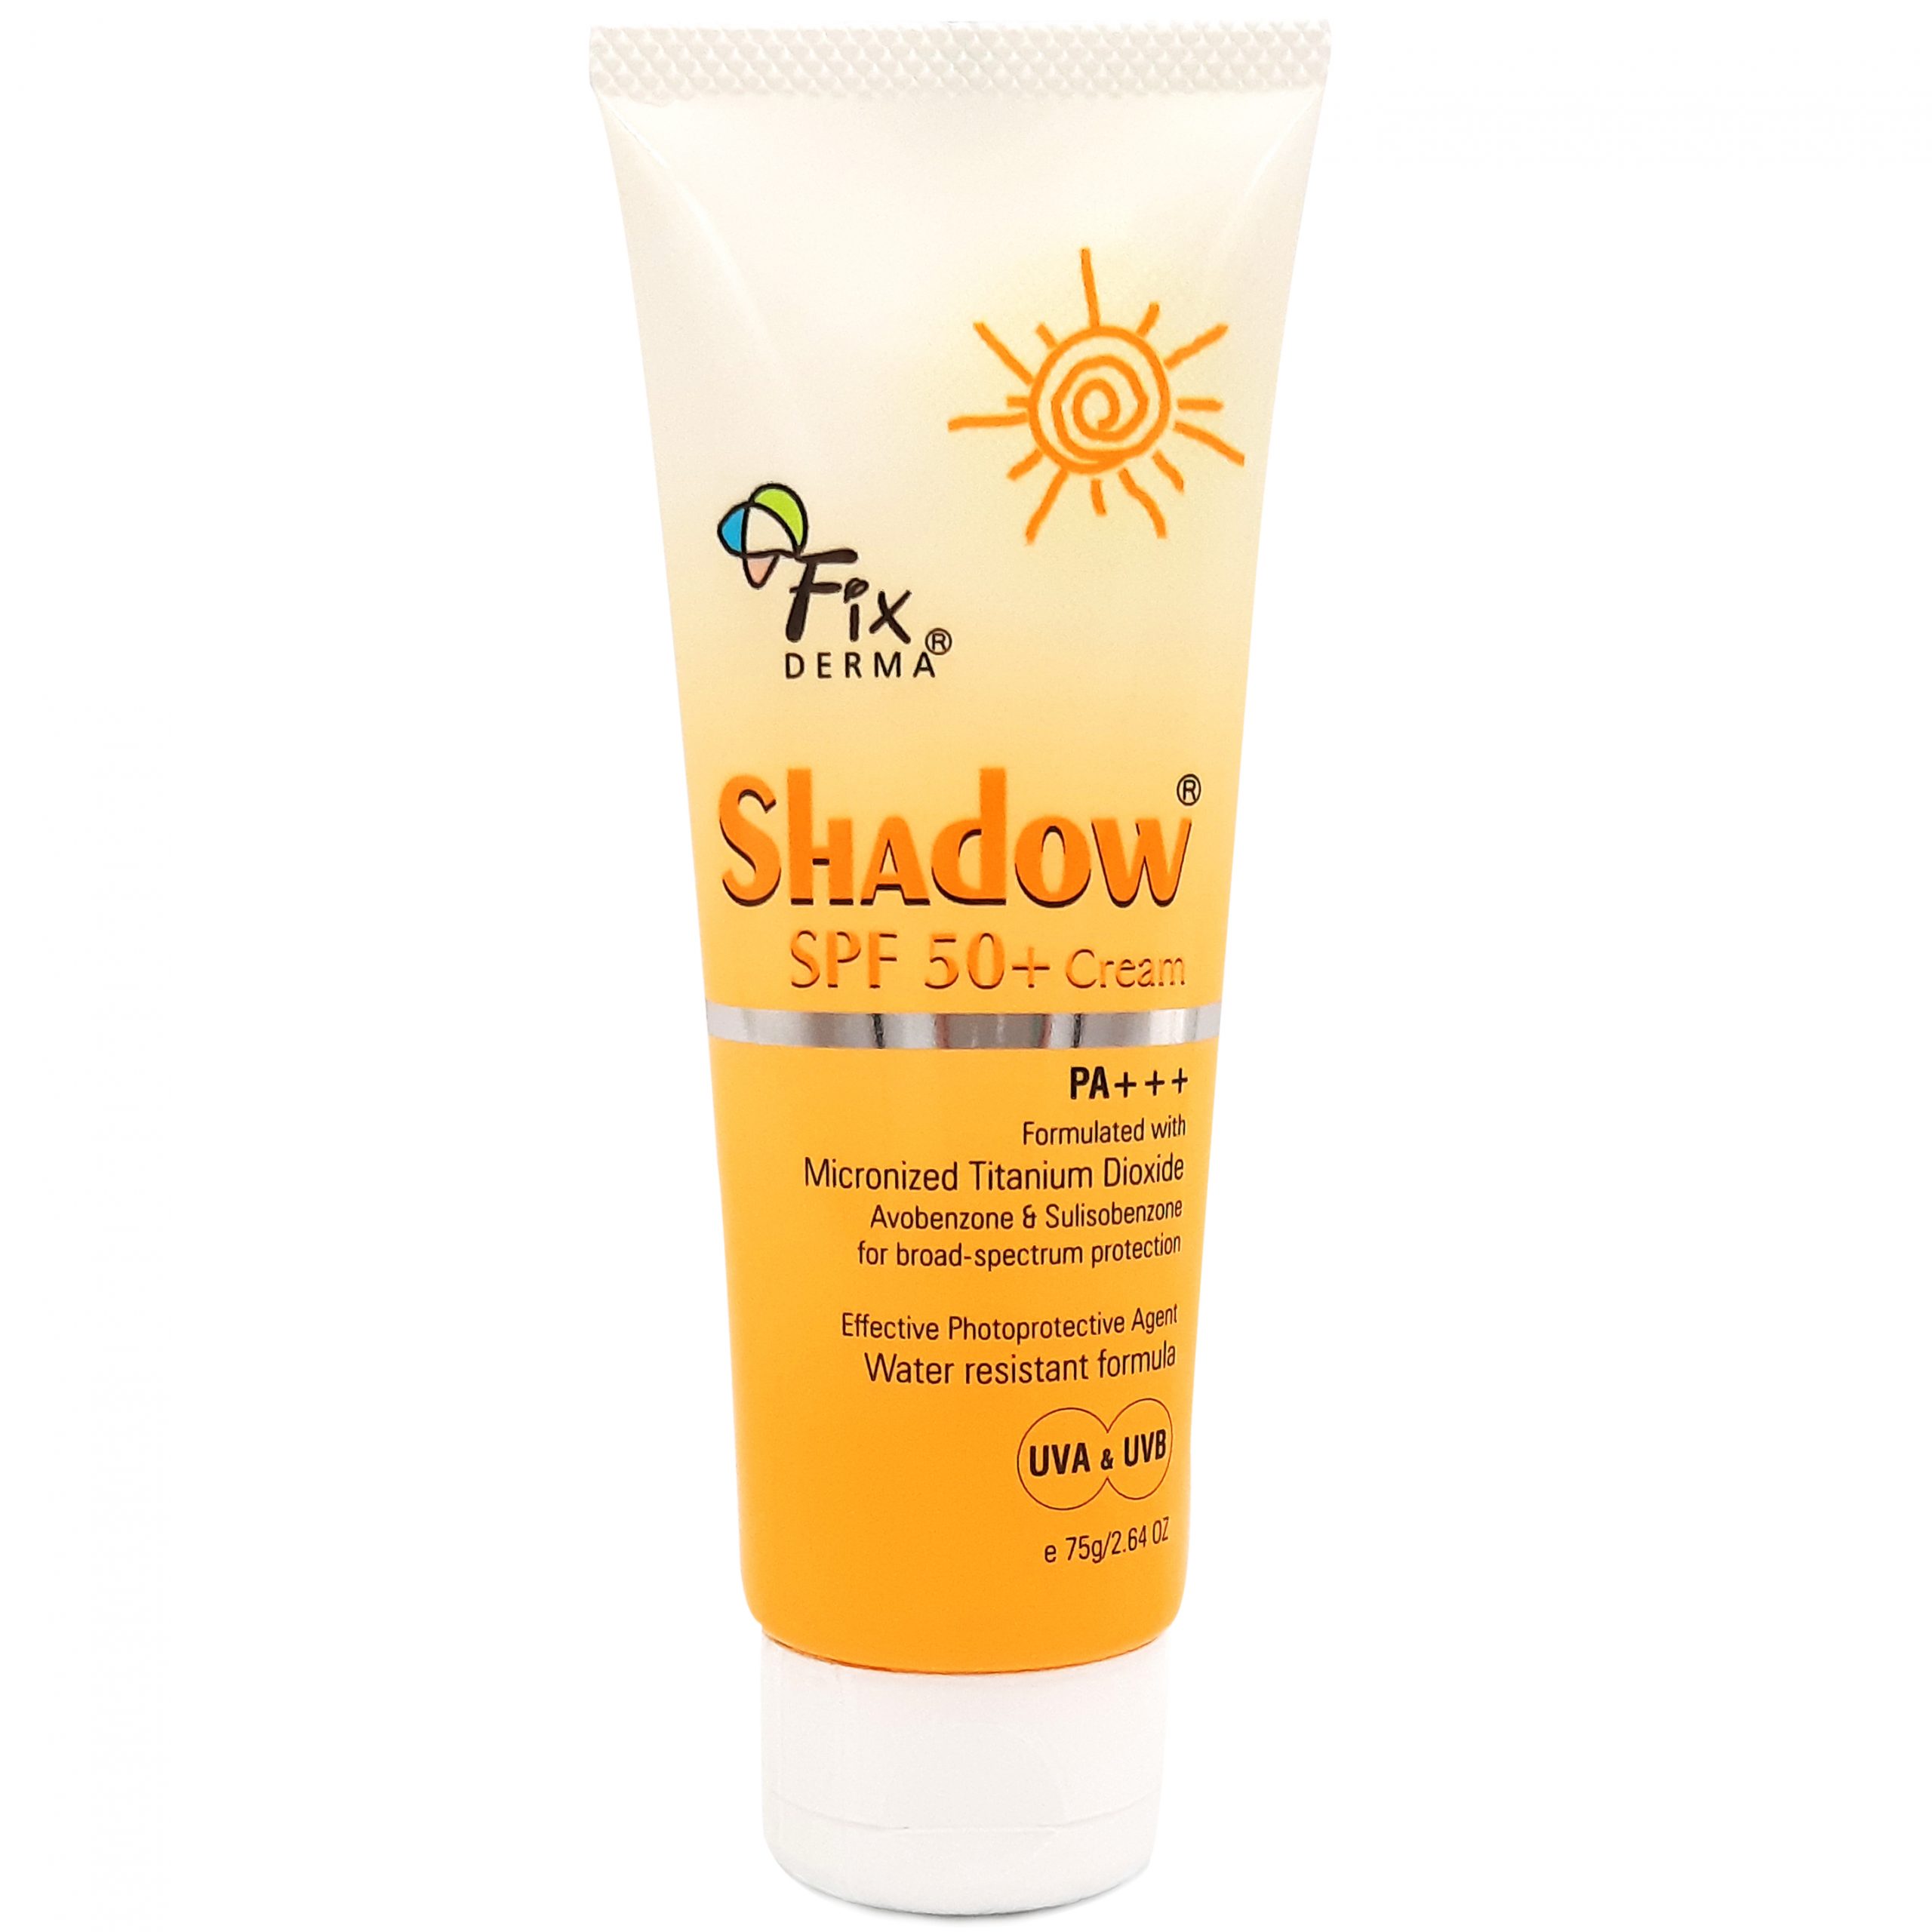 [Quà tặng] Kem chống nắng Fixderma Shadow Cream SPF50 + 75g + Tặng 1 kem tẩy da chết dạng hạt Sebamed 10ml